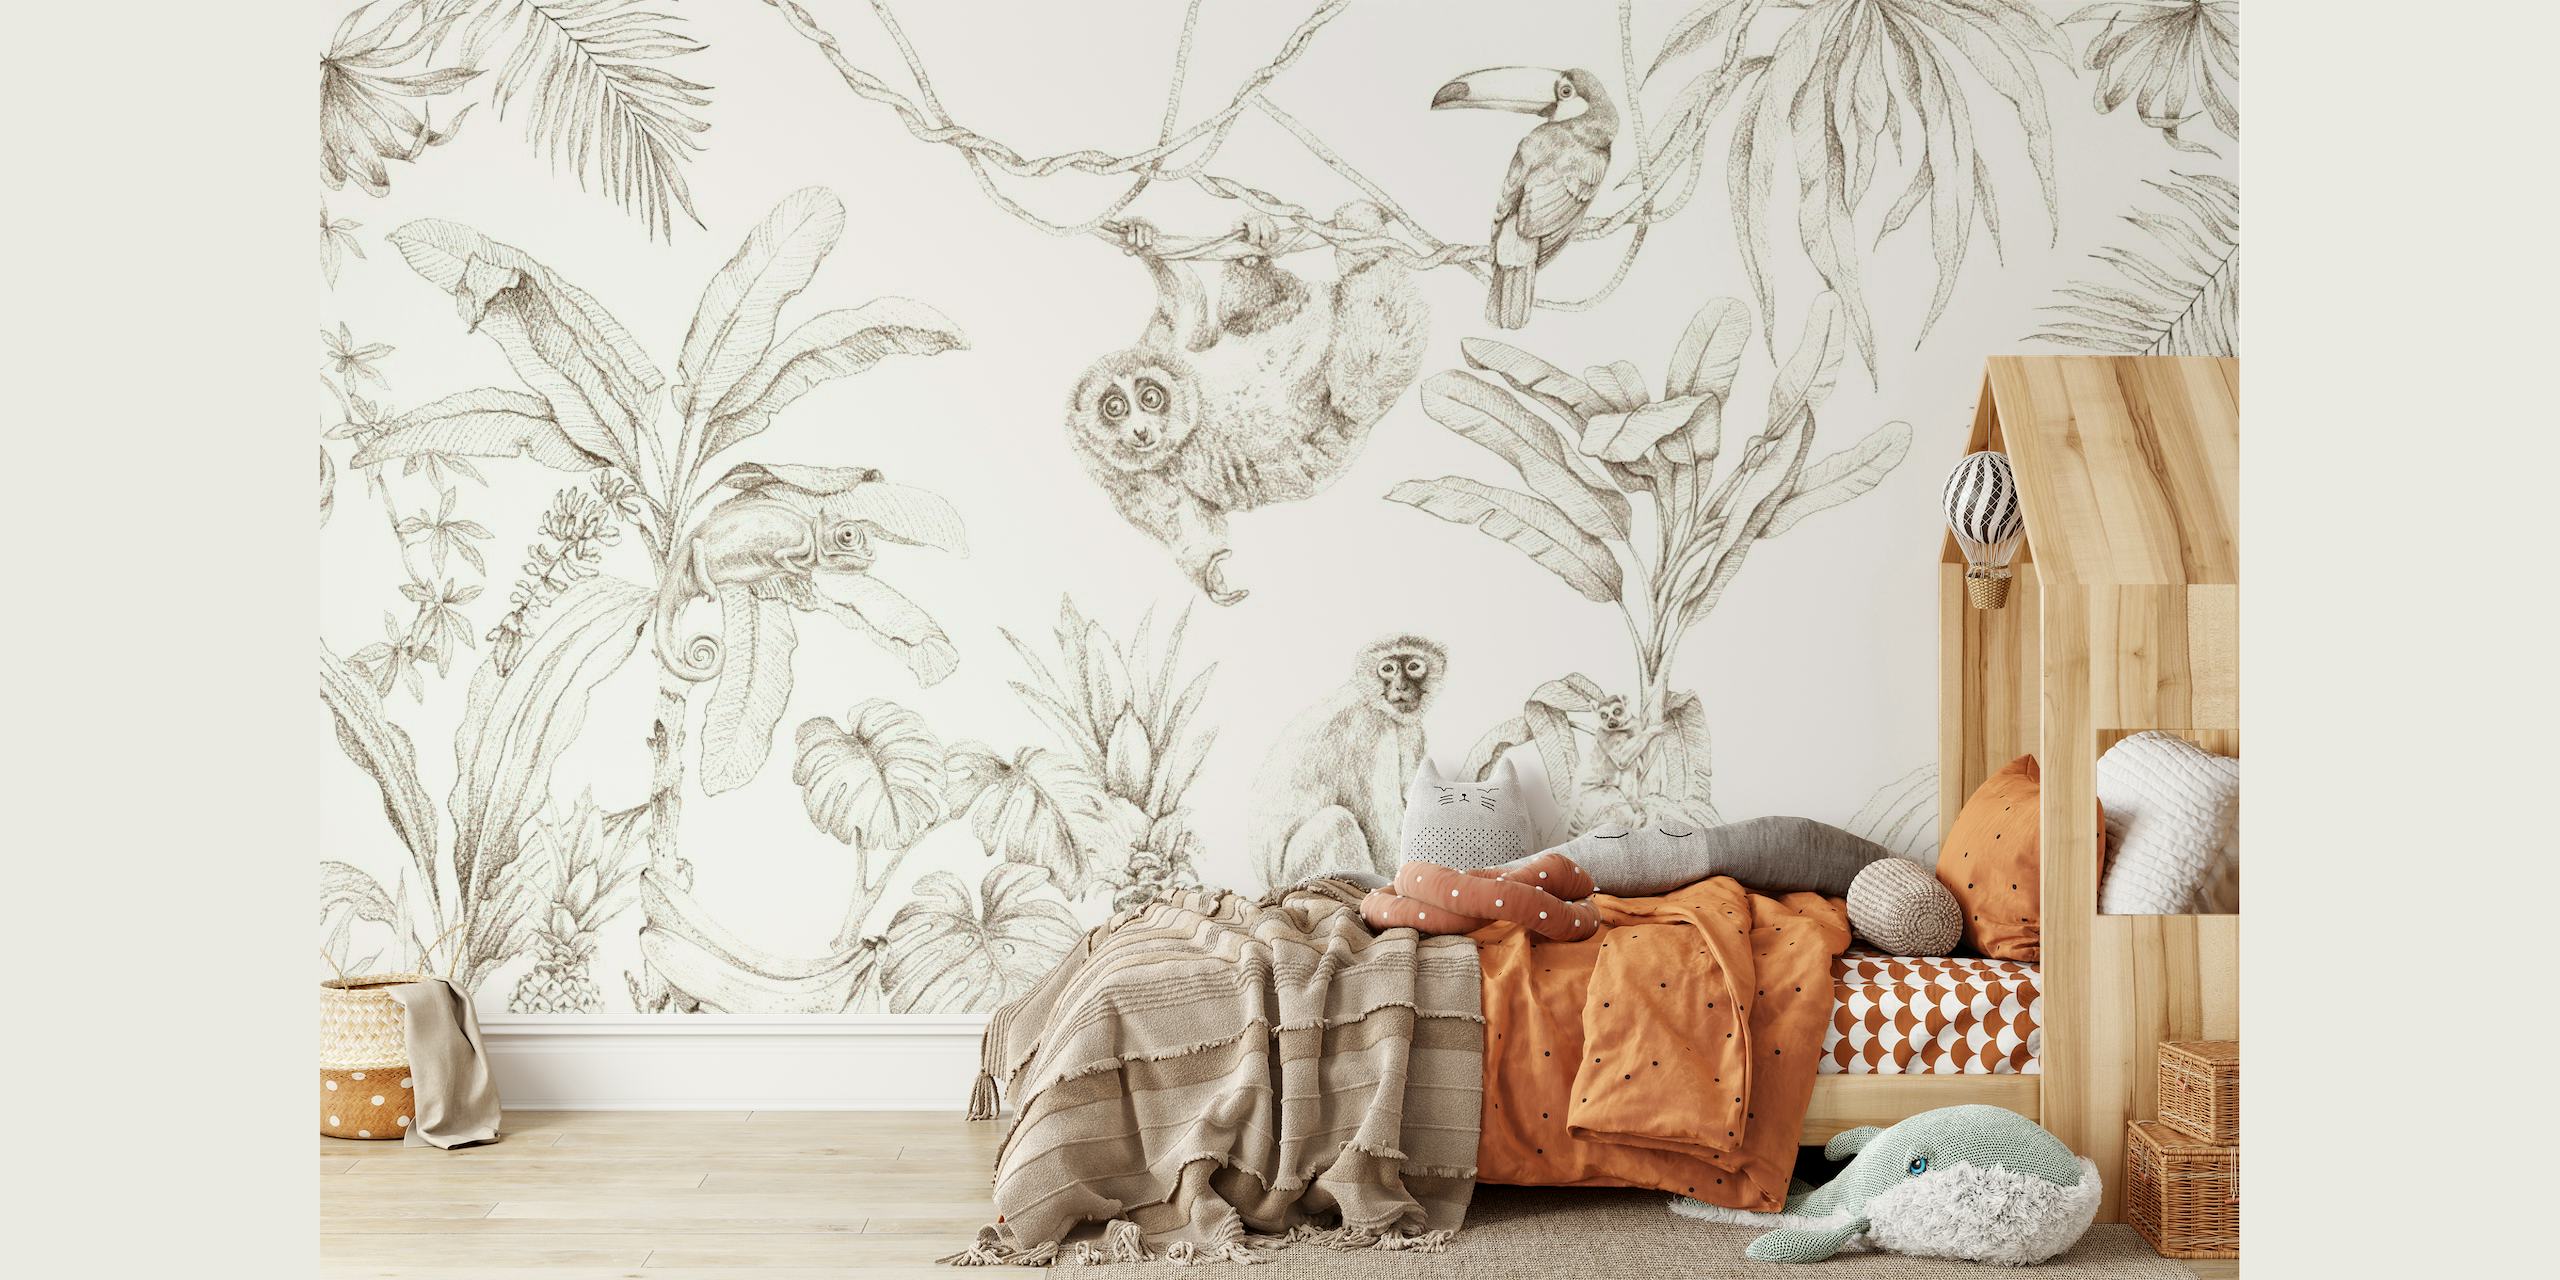 Sketch-tyylinen seinämaalaus, jossa on Afrikan villieläimiä ja trooppisia kasveja